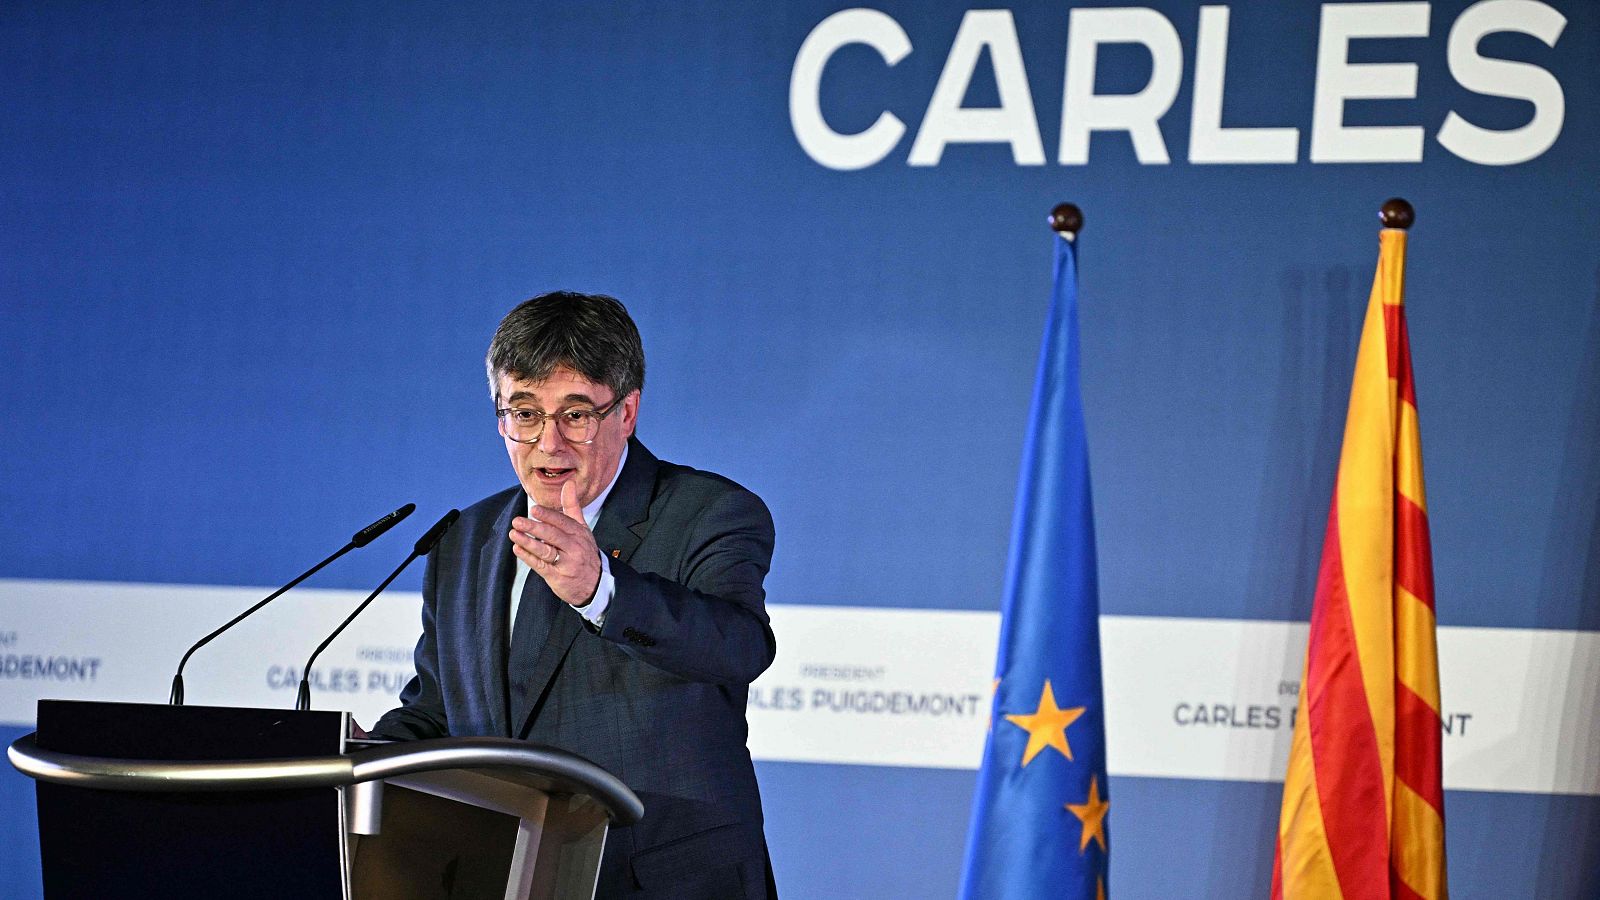 Carles Puigdemont, en la rueda de prensa en la que anunció su candidatura